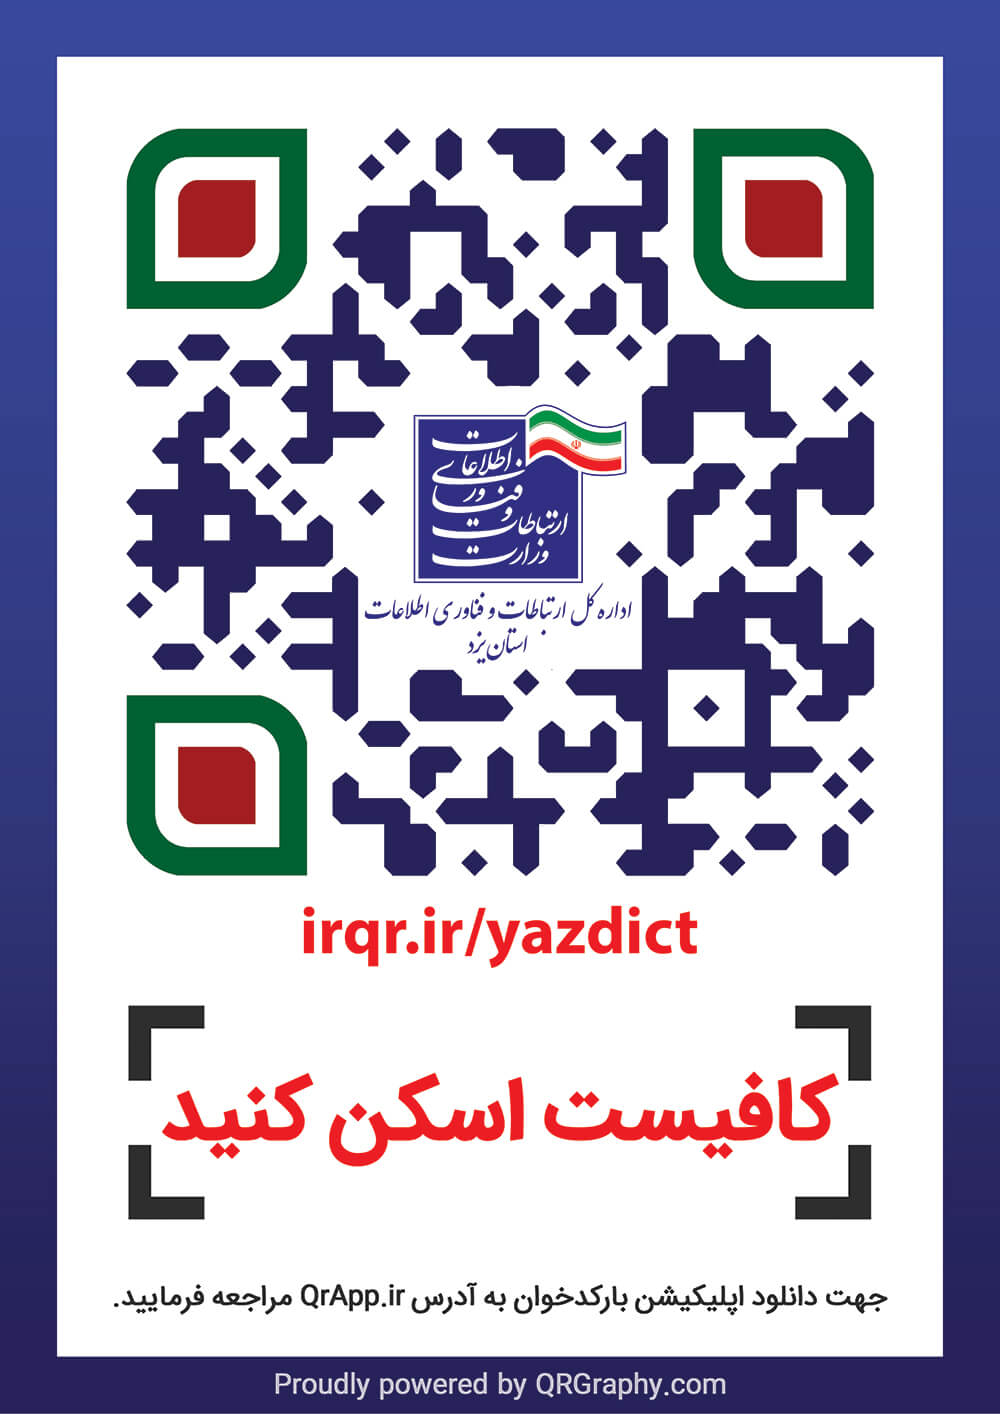 اداره کل ارتباطات و فناوری اطلاعات استان یزد